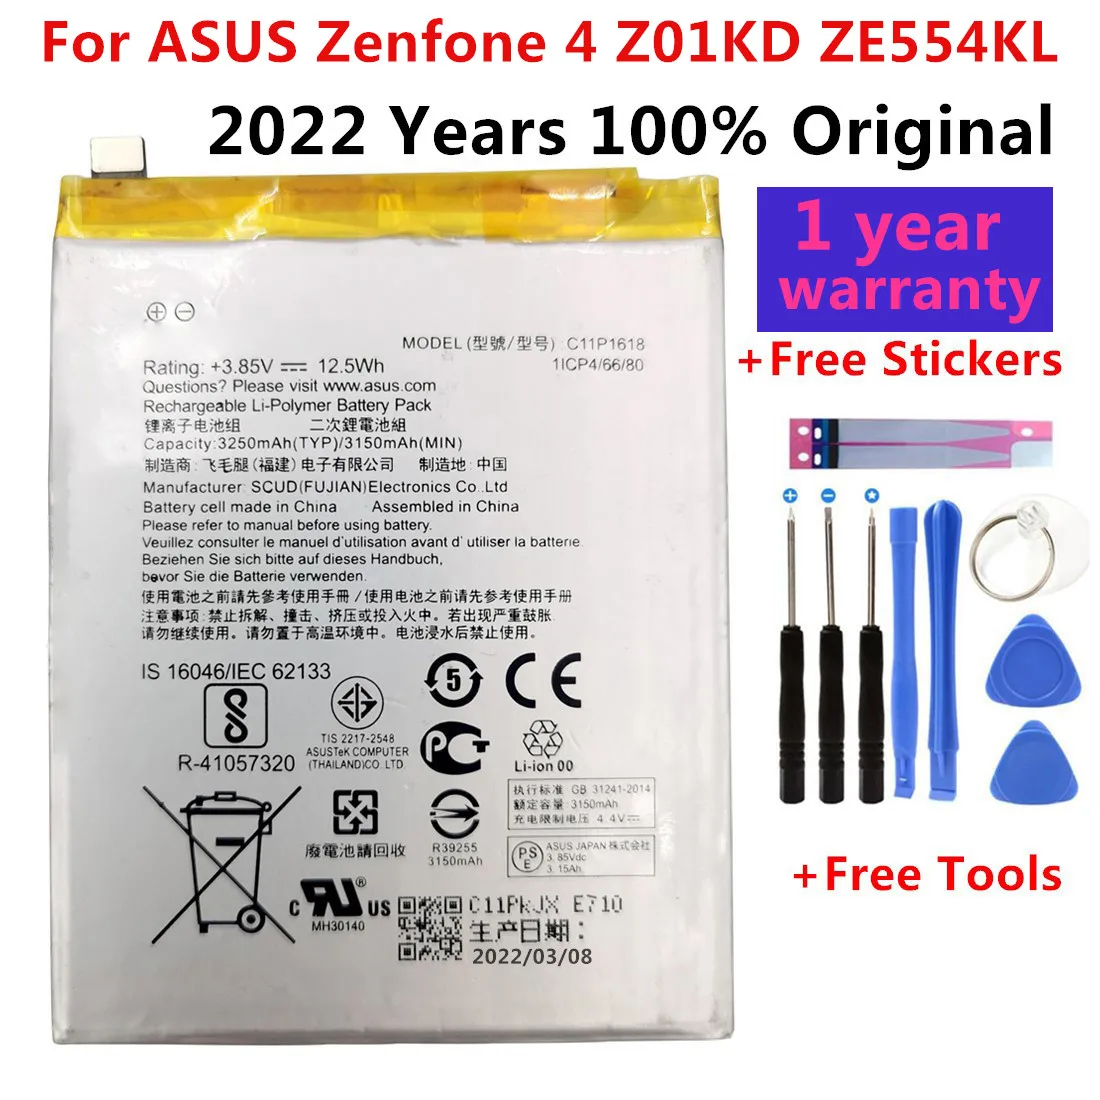 

C11P1618 Original Phone Battery For ASUS Zenfone 4 Z01KD ZE554KL 3250mAh High Capacity Batteries Bateria+Free Tools